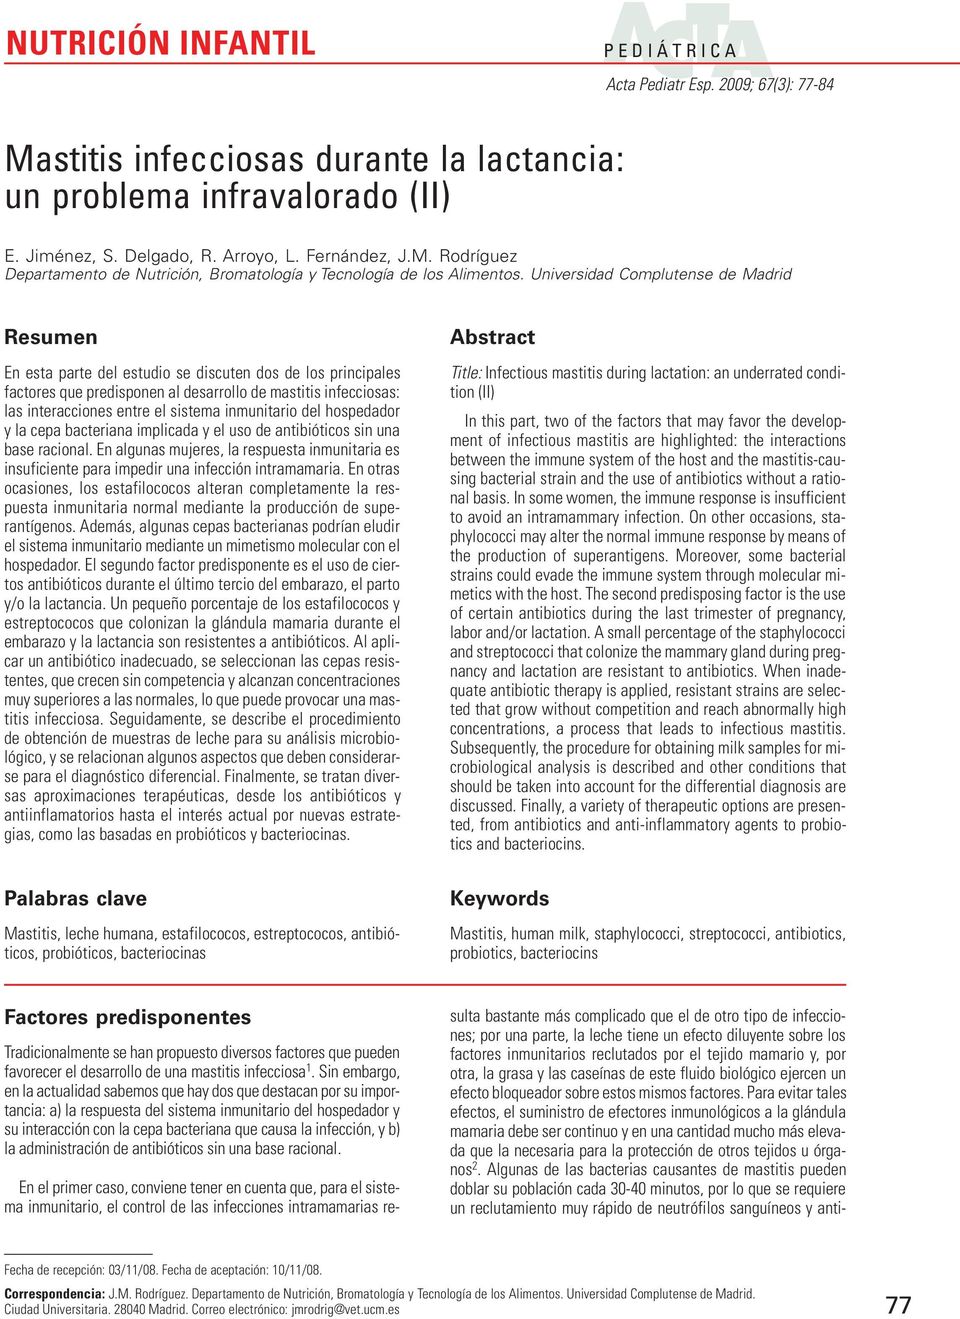 sistema inmunitario del hospedador y la cepa bacteriana implicada y el uso de antibióticos sin una base racional.